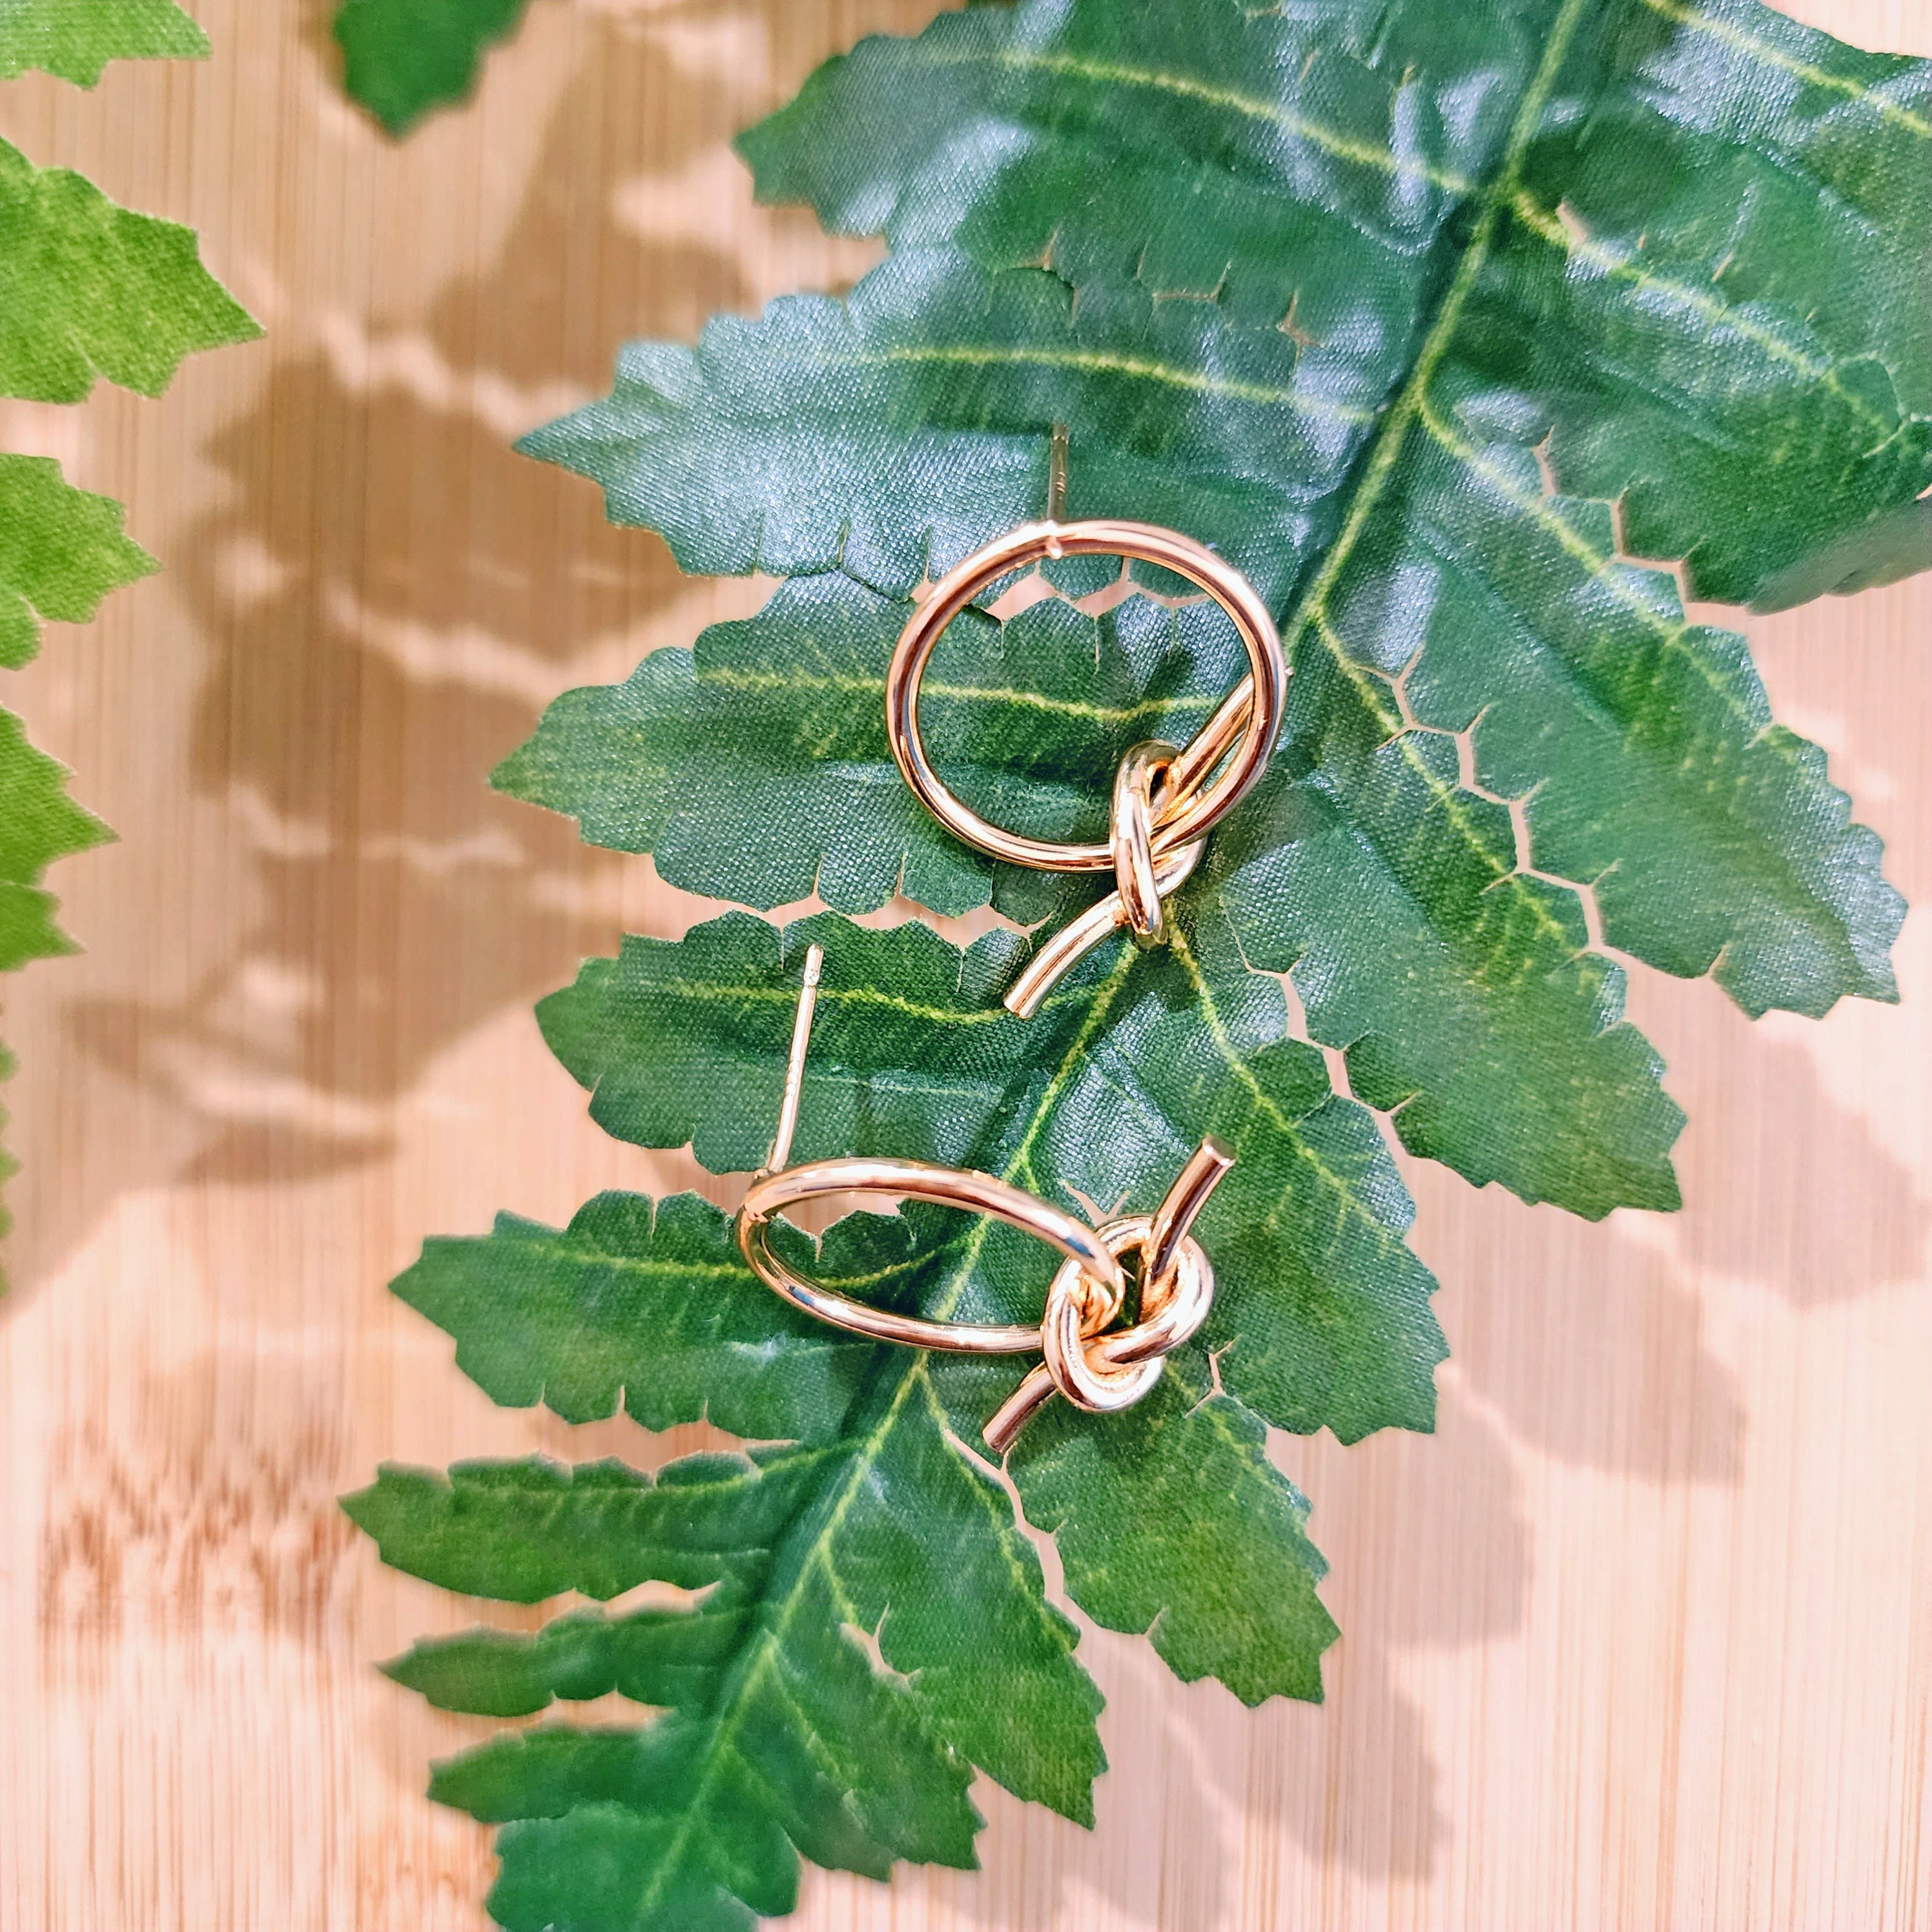 Leaf Earrings - Leaf Studs - Jade Earrings - Nature - Green Leaf Earrings - Green Leaves - A Pair of Carved Jade Leaf Stud Earrings